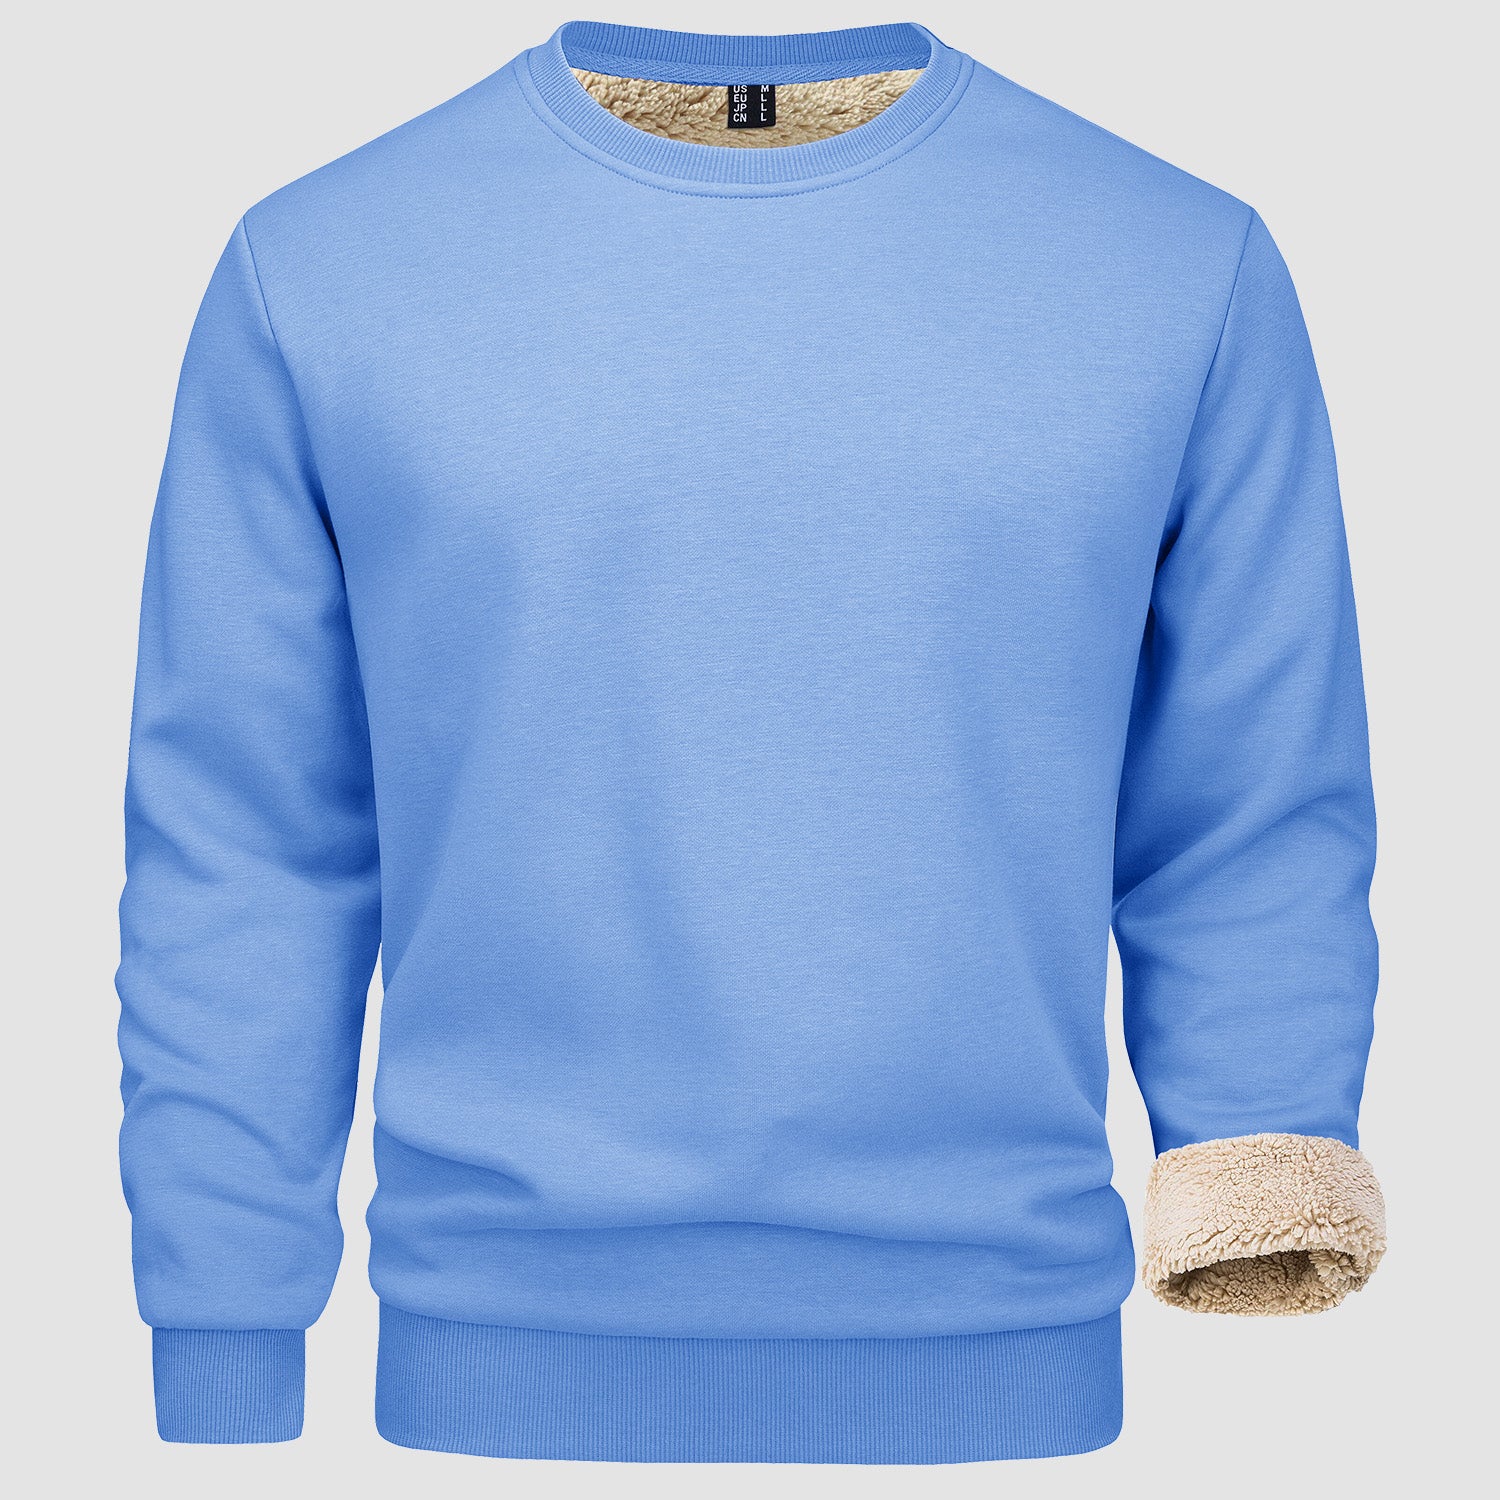 Men's Fleece Lined Sweatshirts, Crewneck Winter Sweater